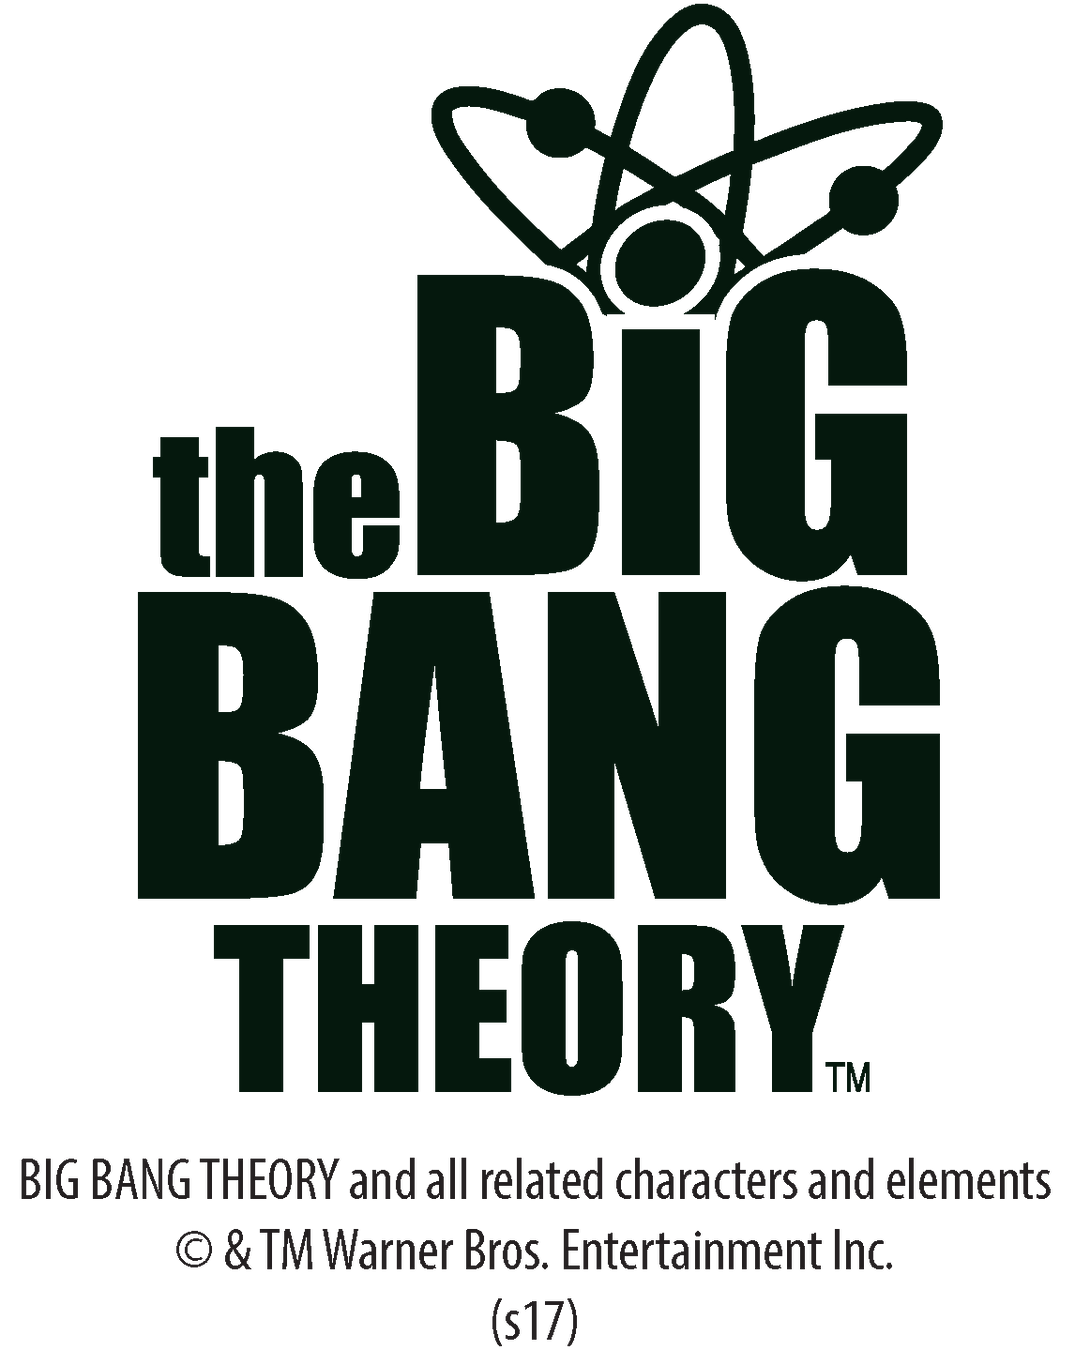 Big Bang Theory Neck Print